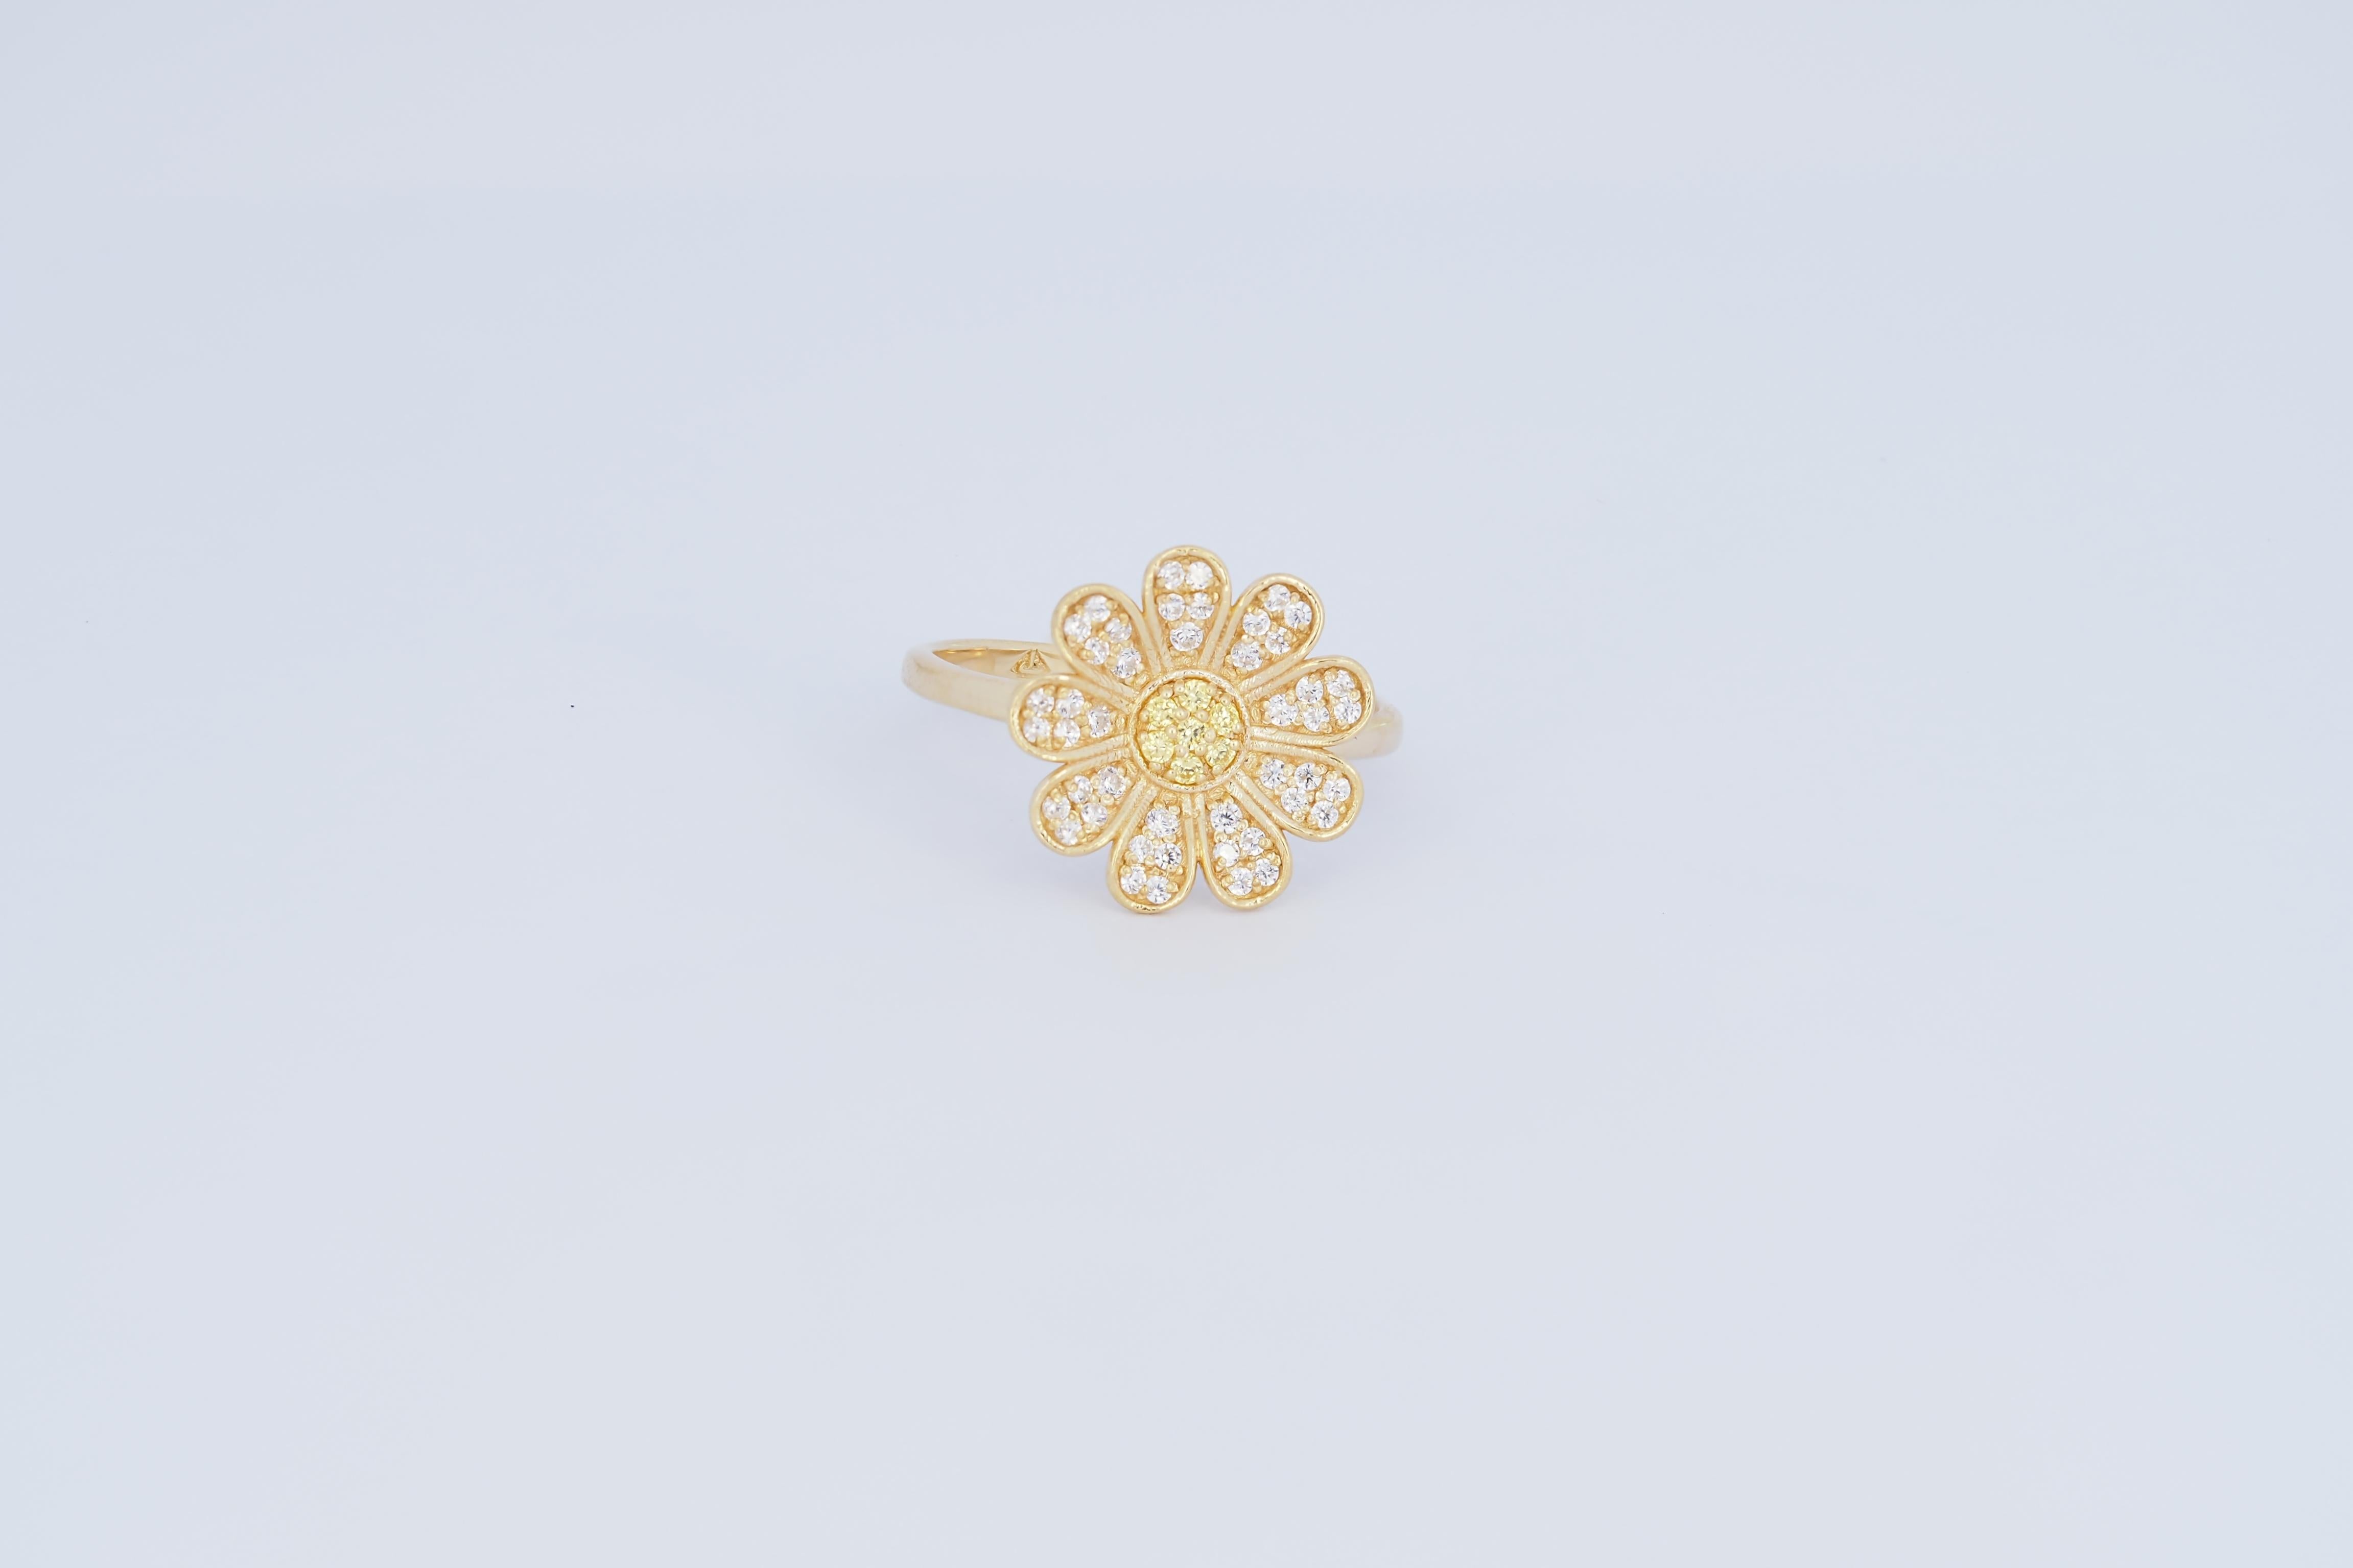 For Sale:  Daisy flower 14k gold ring.  8